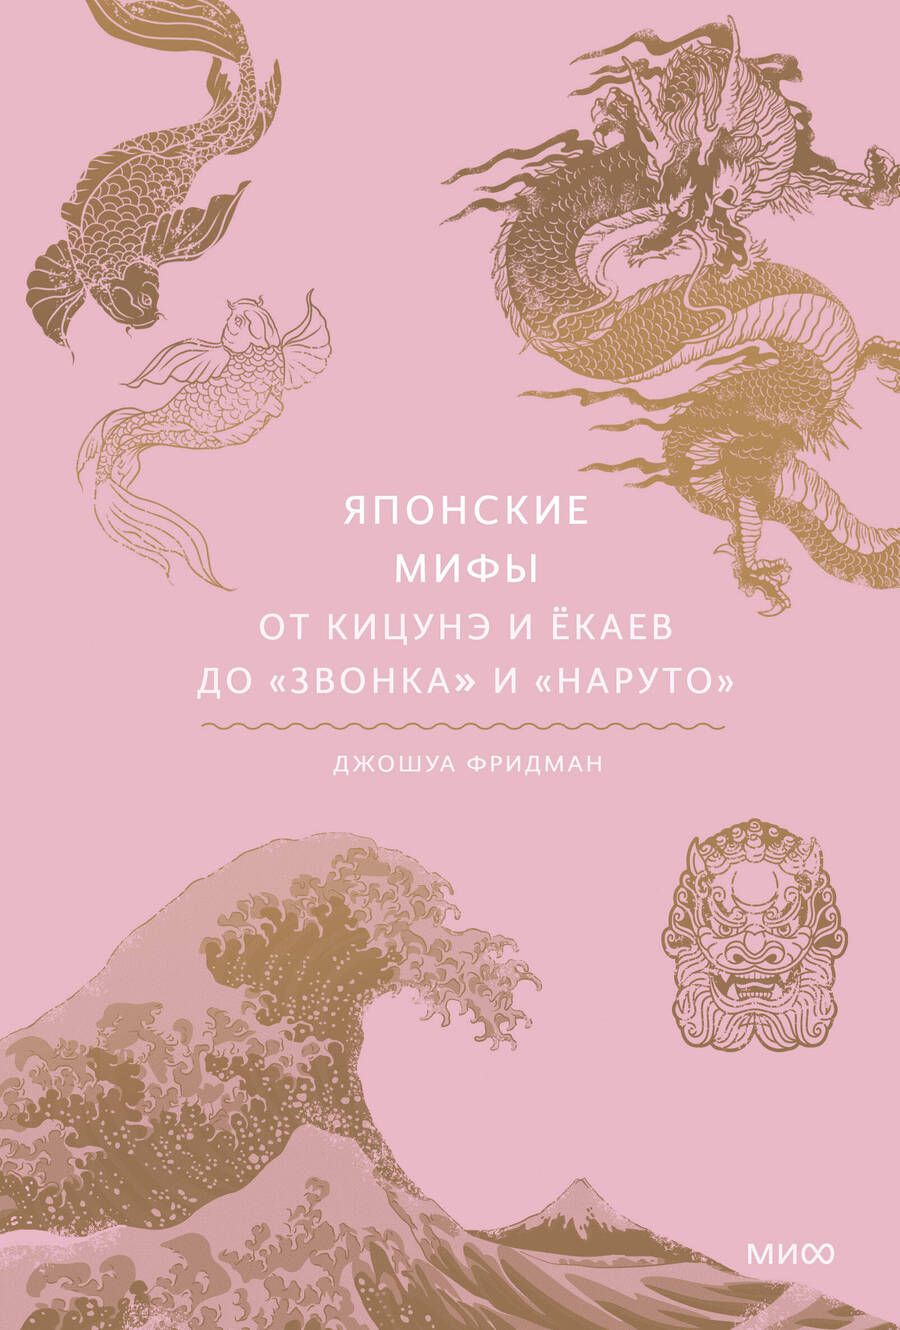 Обложка книги "Фридман: Японские мифы. От кицунэ и ёкаев до "Звонка" и "Наруто""